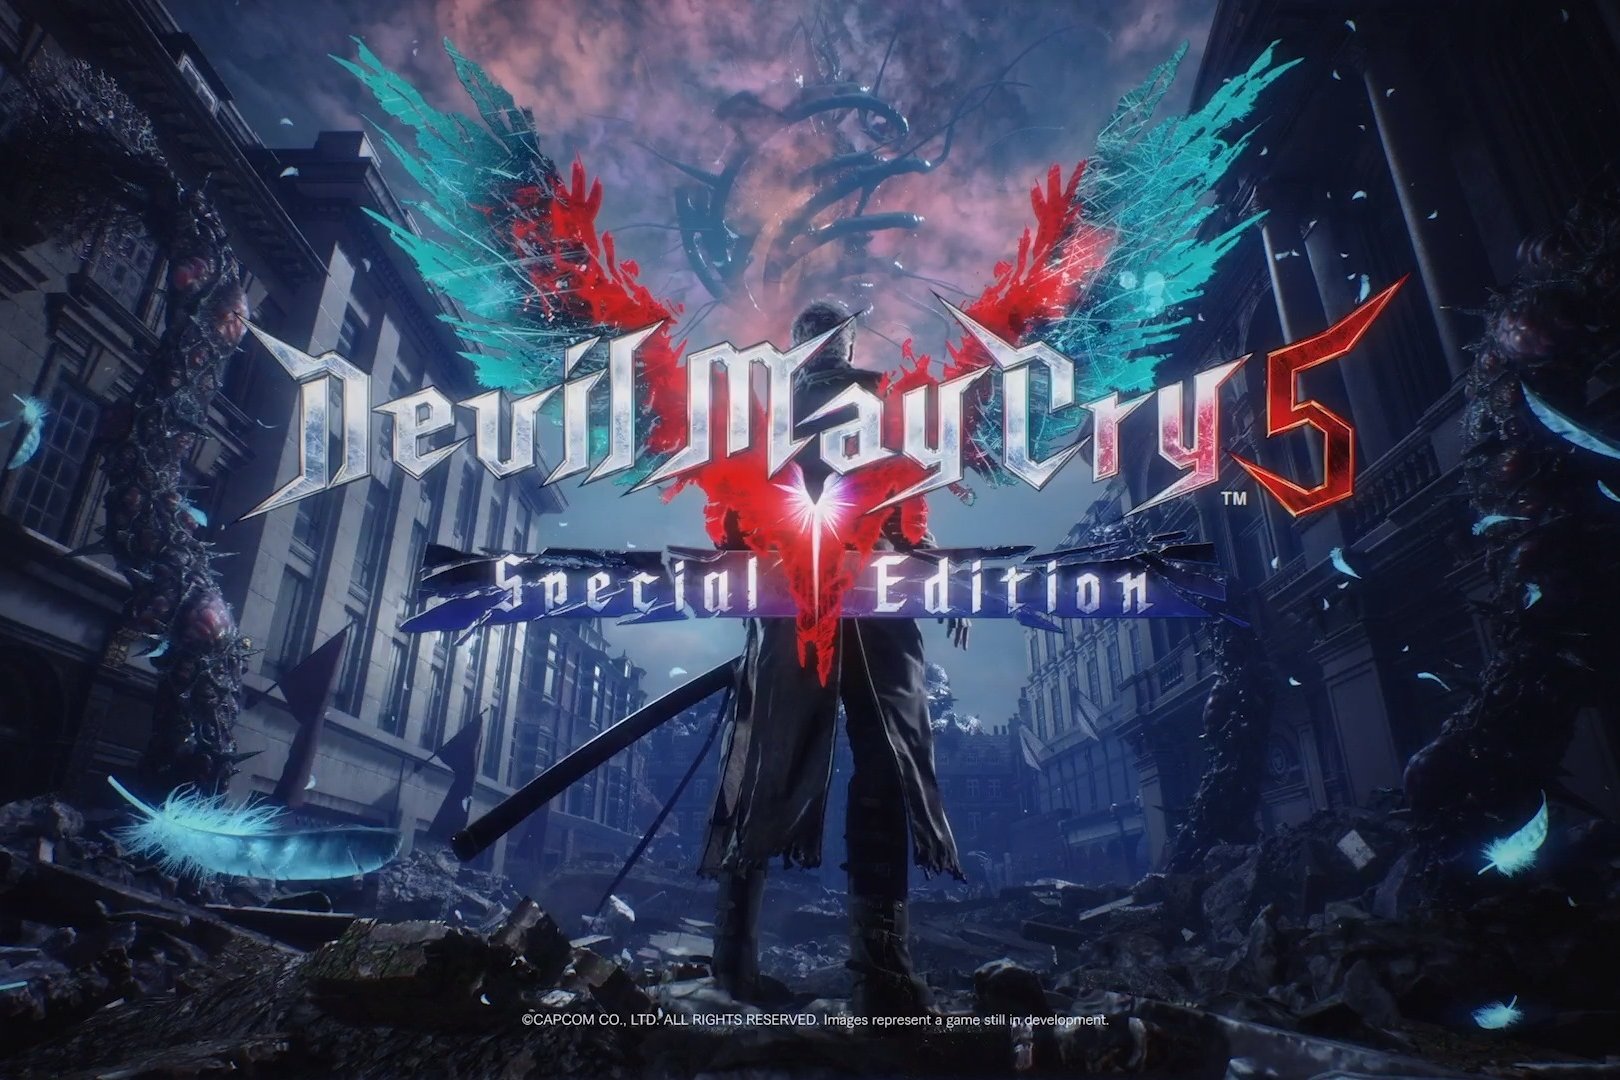 Mod de Devil May Cry 5 adiciona modo multiplayer na versão de PC